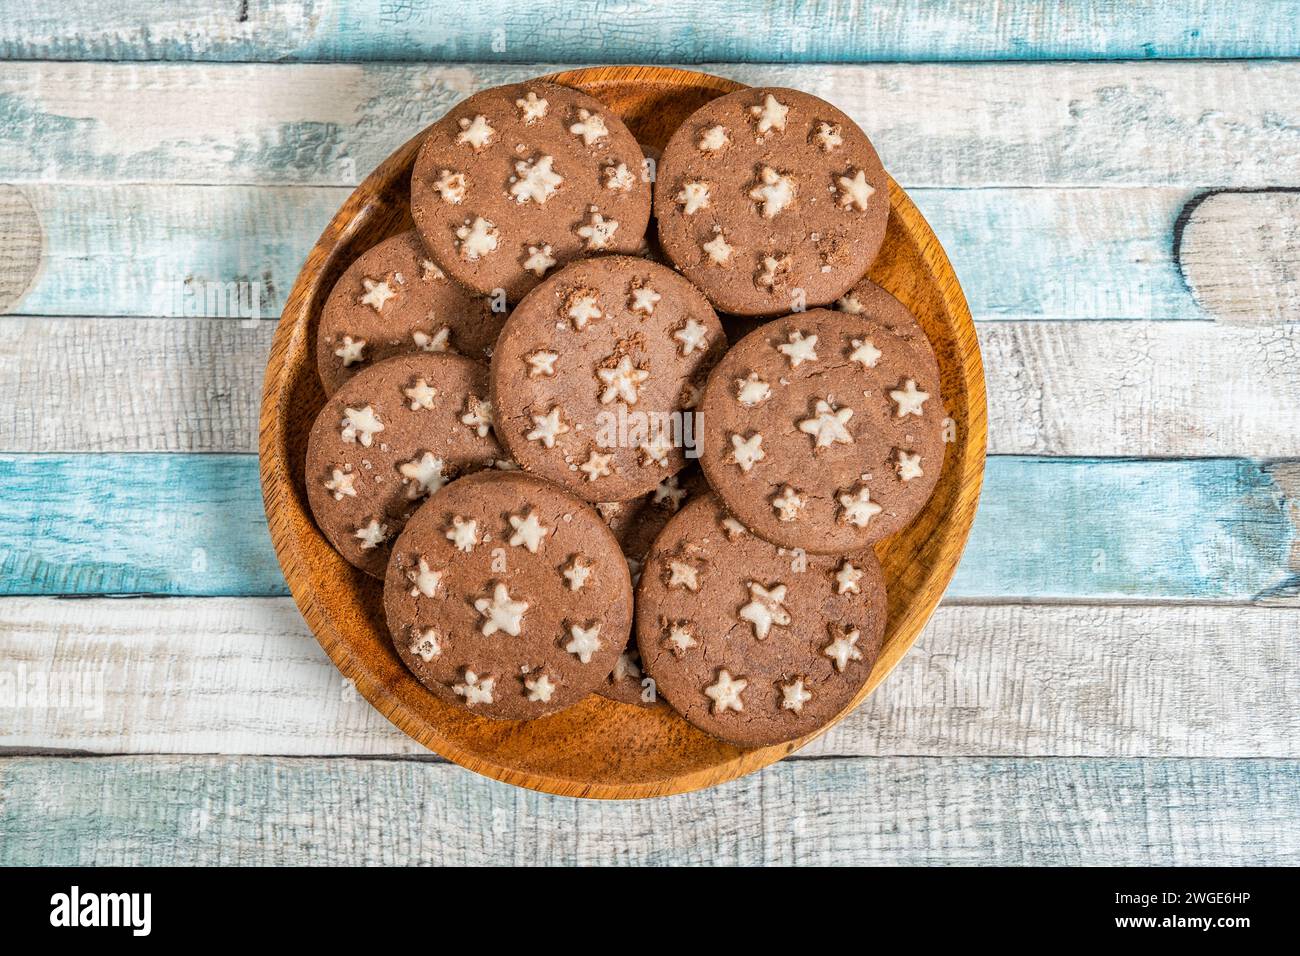 Délicieux biscuits au cacao sucré biscuits sur une assiette en bois. Prise de vue aérienne. Fond bleu coloré. Banque D'Images